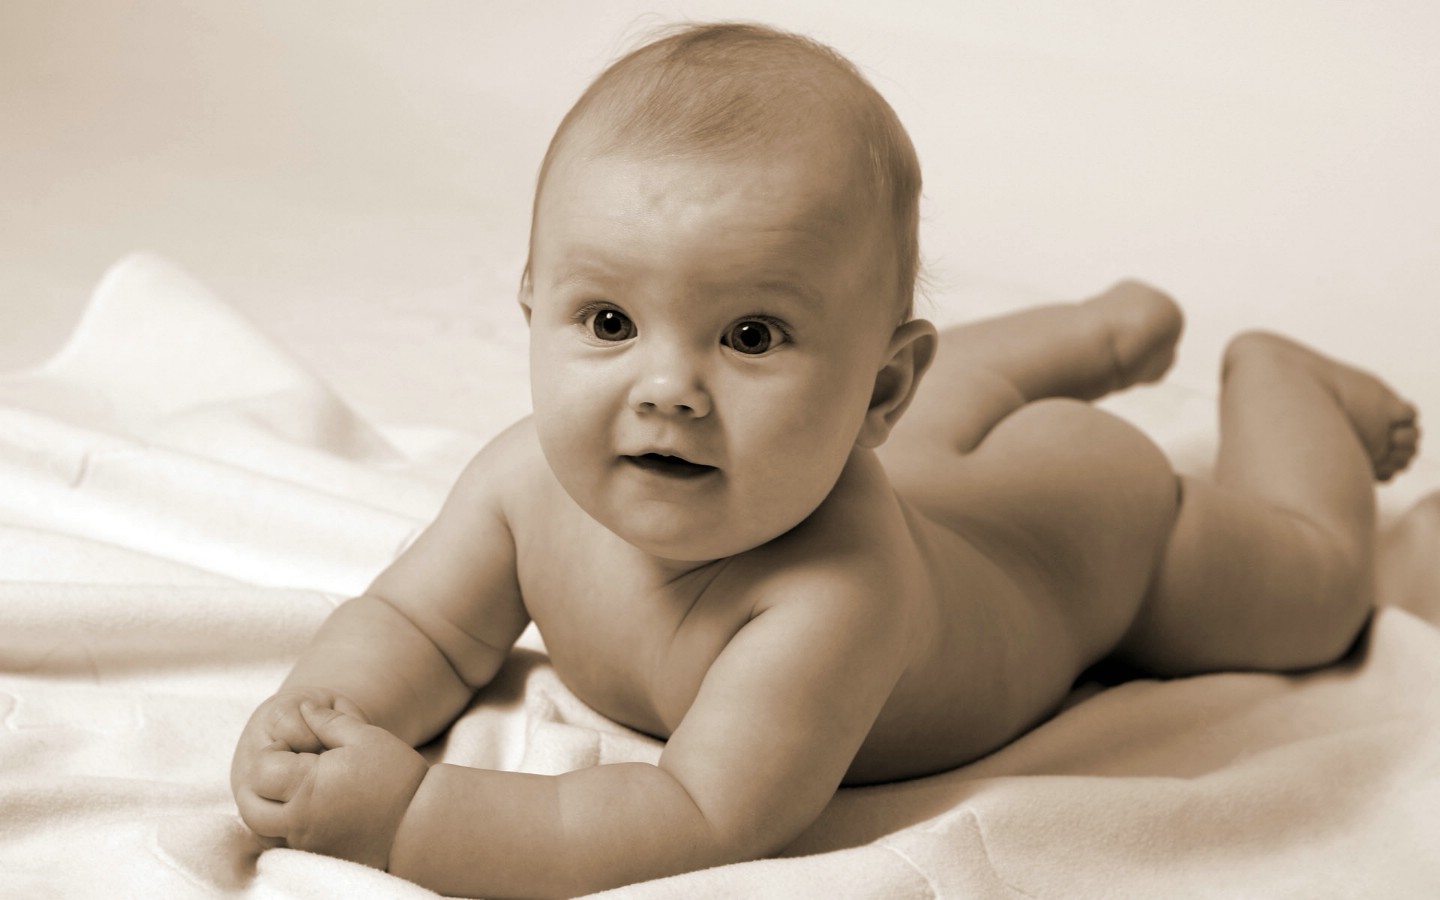 壁纸1440x900人体艺术图片 婴儿 壁纸35壁纸 人体艺术图片（婴儿）壁纸 人体艺术图片（婴儿）图片 人体艺术图片（婴儿）素材 系统壁纸 系统图库 系统图片素材桌面壁纸